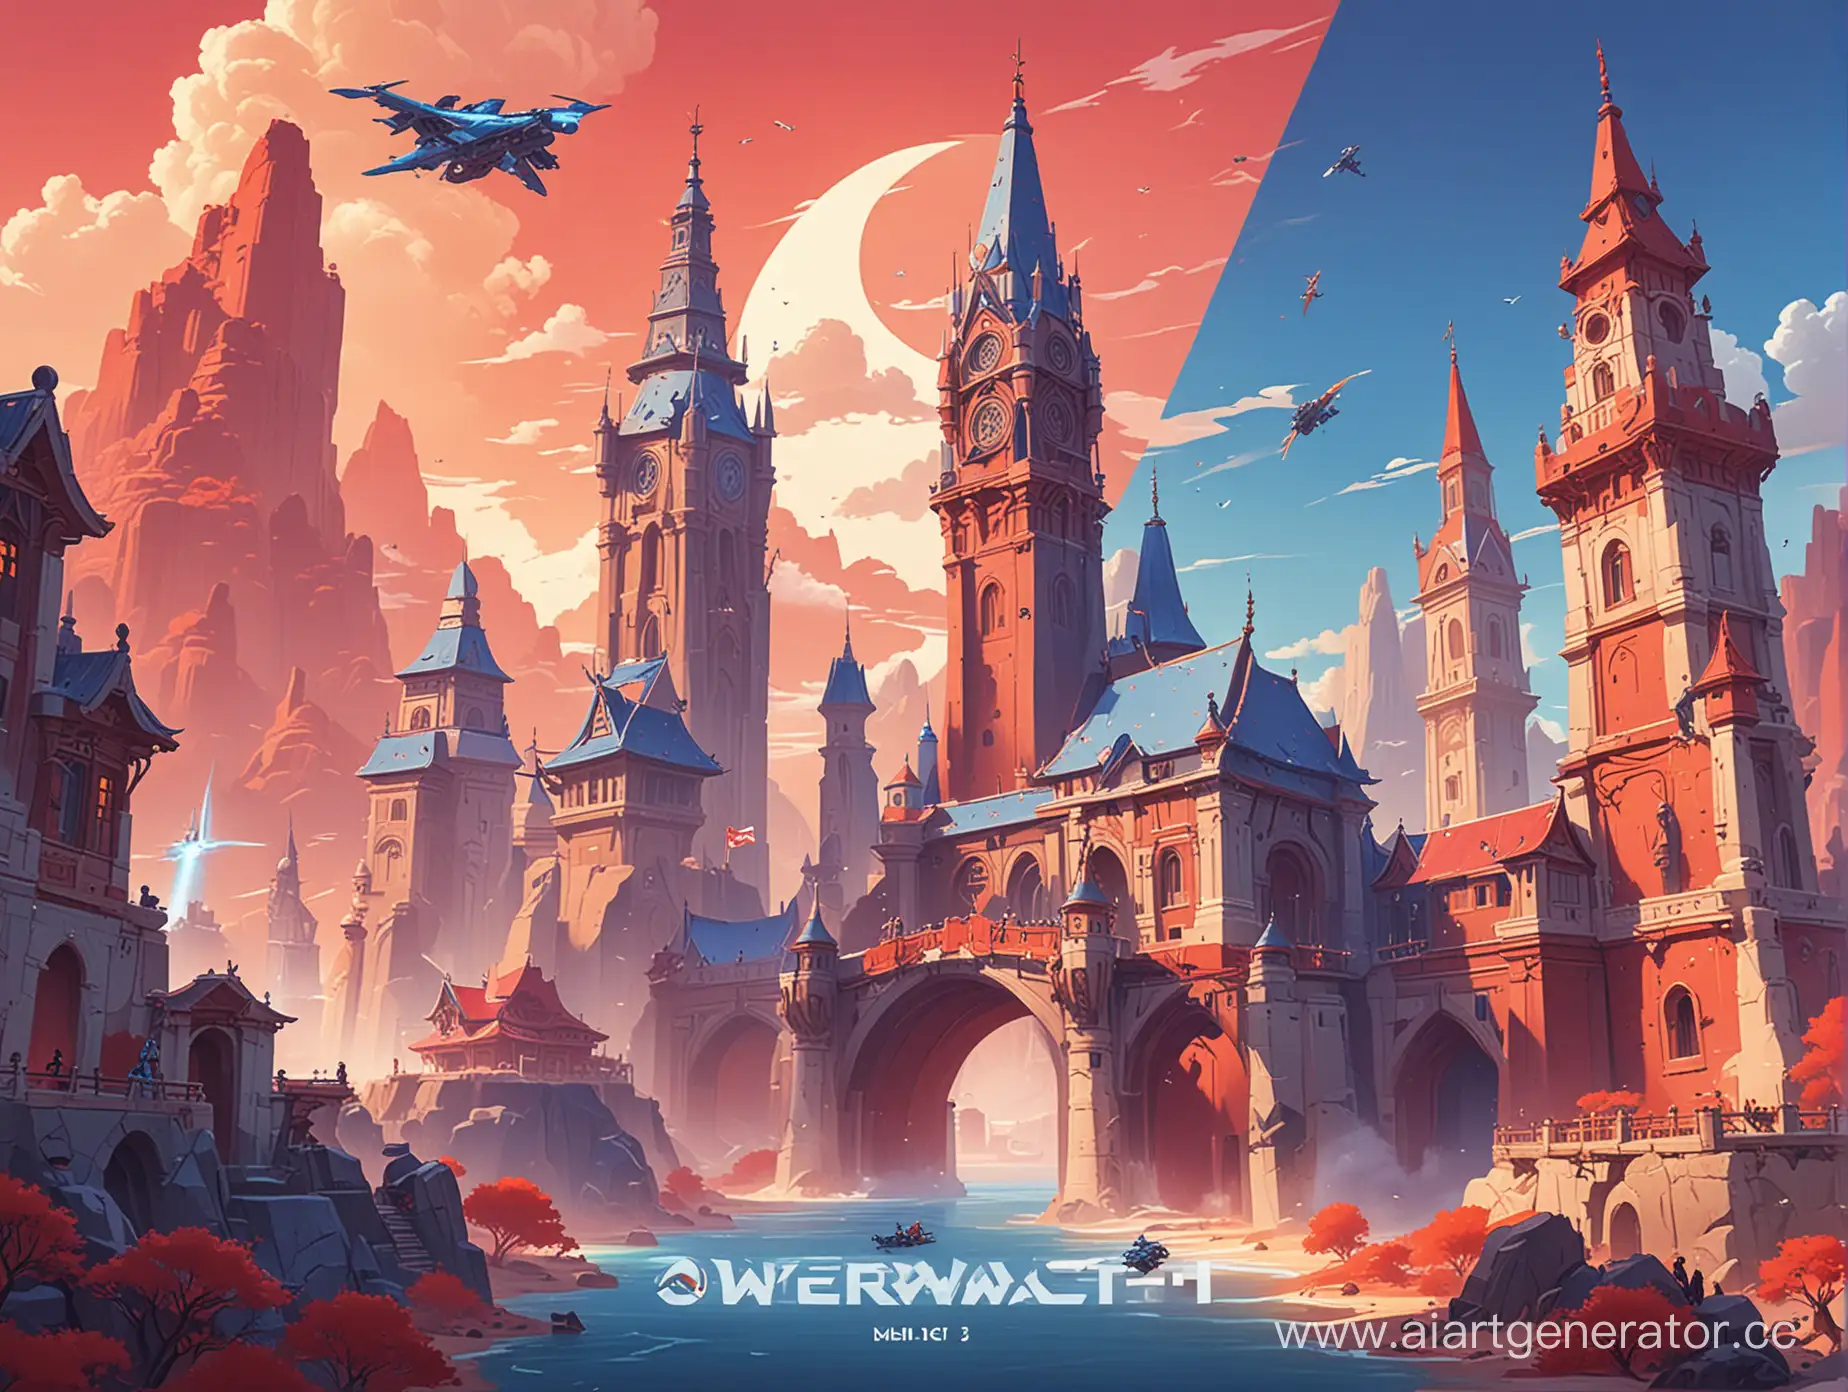 Обложка для книги про путешествия в синем и красном цветах в стиле  Overwatch 2 с достопримечательностями мира